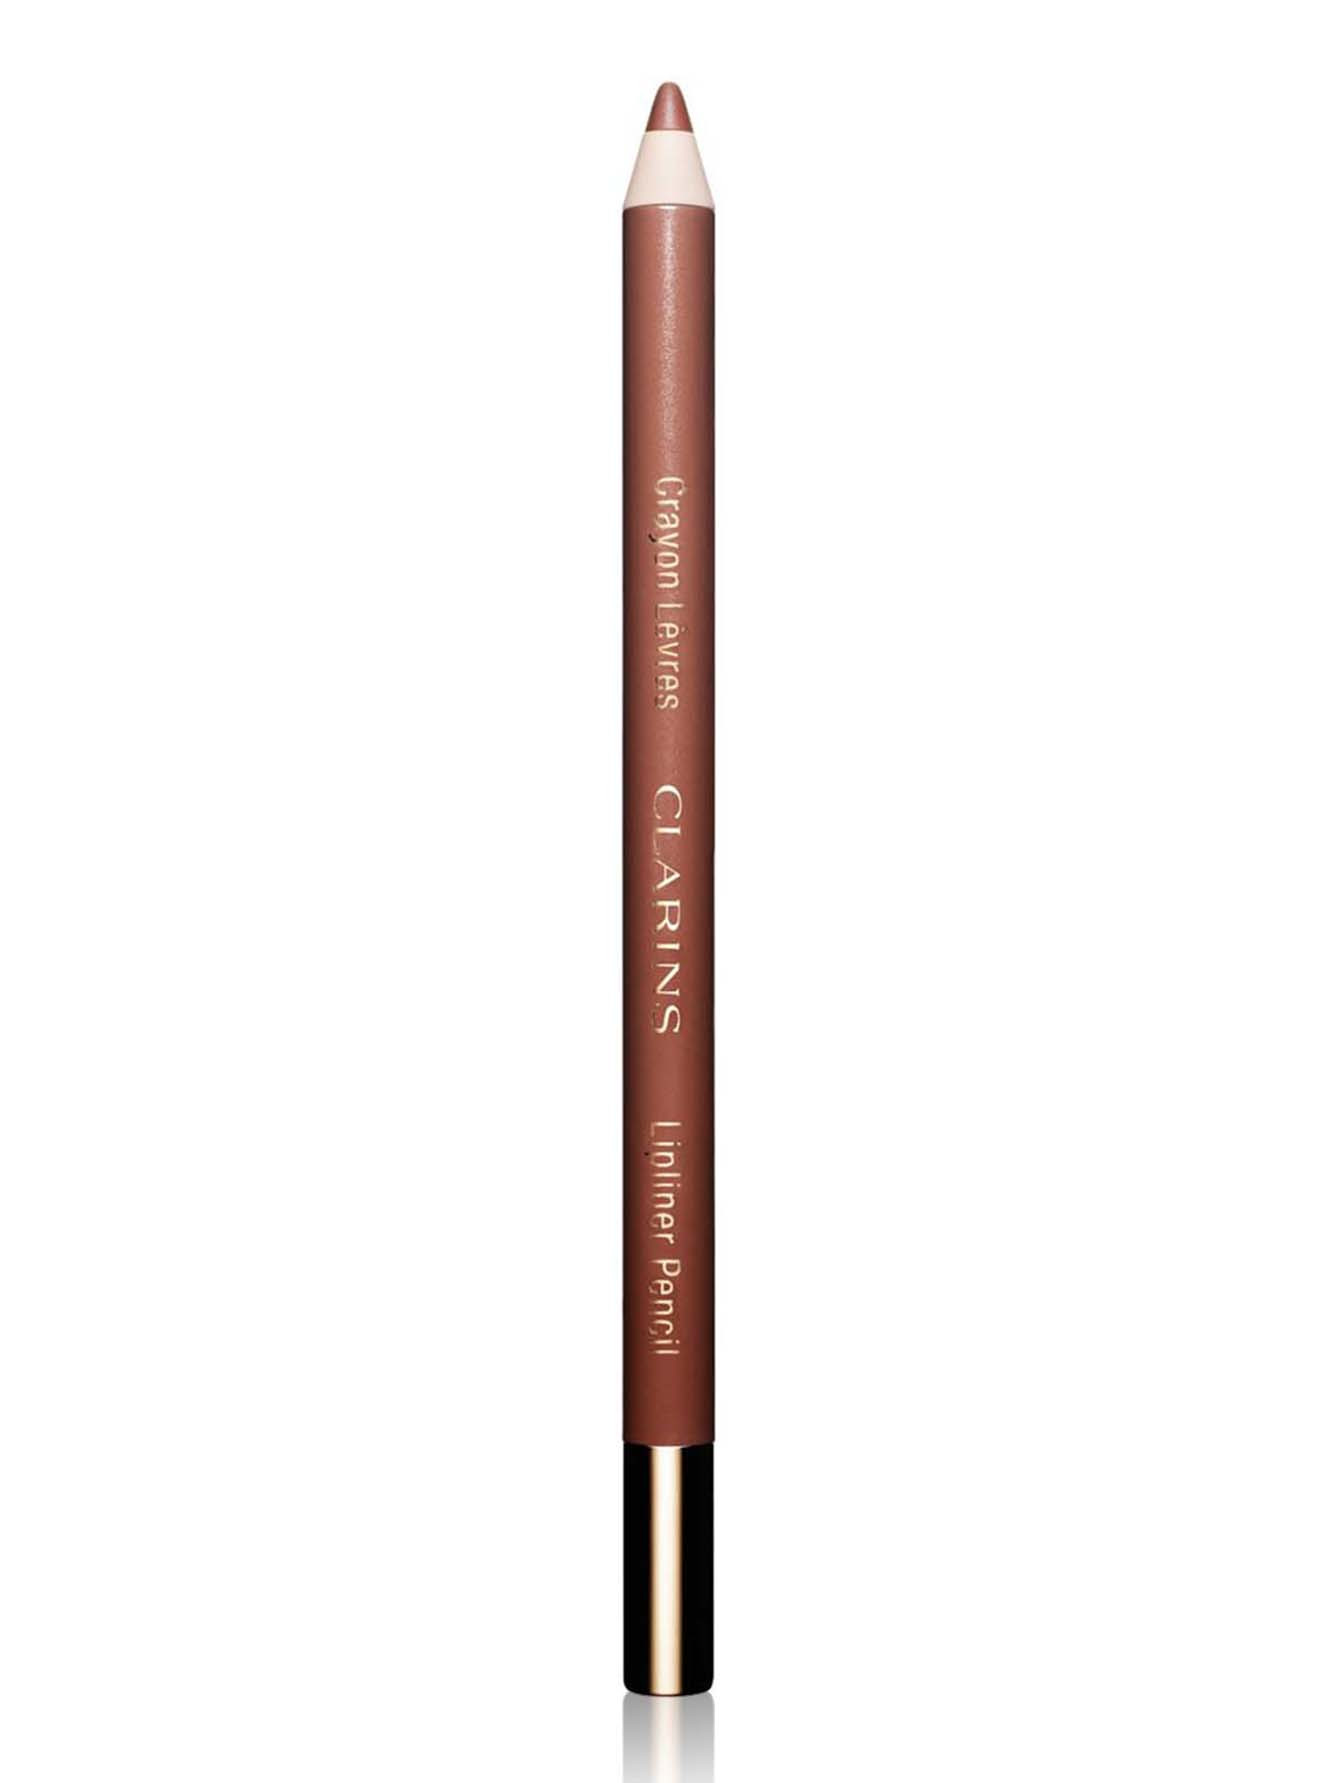  Карандаш для губ - №02 Nude beige, Crayon Levres - Общий вид